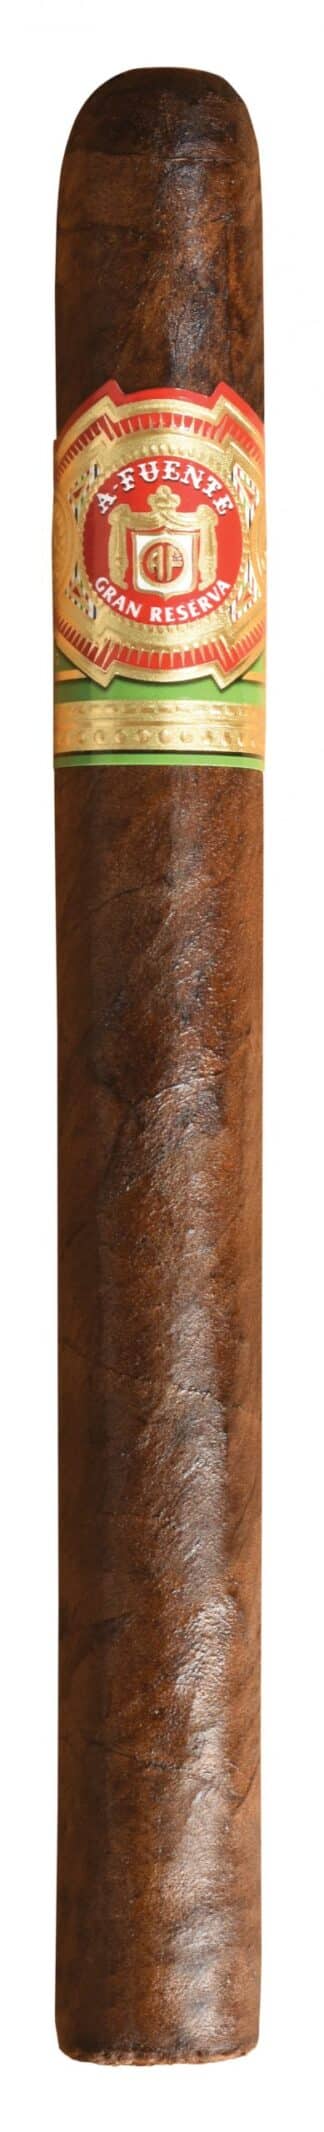 single arturo fuente seleccion privado number 1 maduro cigar